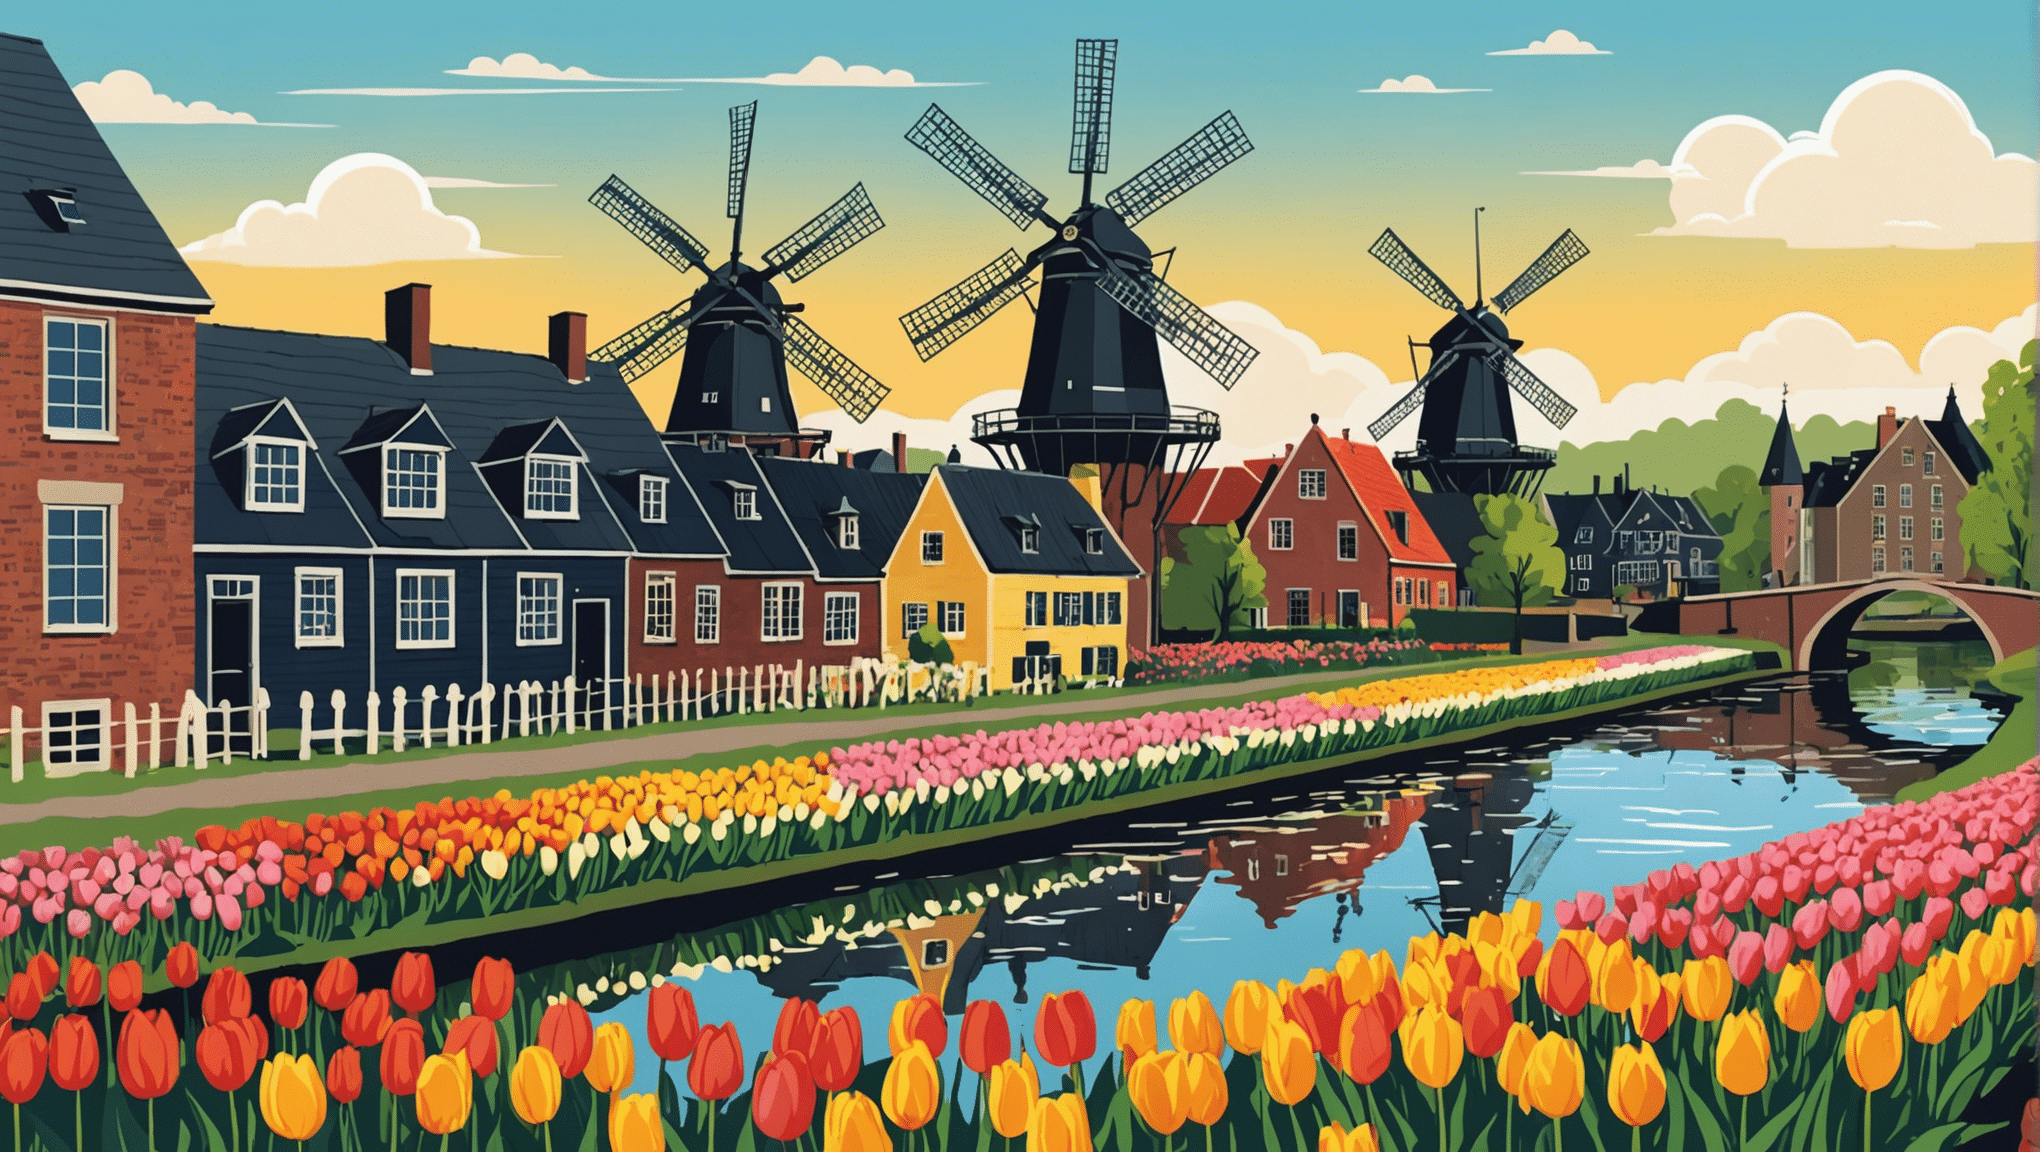 नीदरलैंड के आकर्षण की खोज करें: प्रतीकात्मक पवन चक्कियों, शानदार ट्यूलिप क्षेत्रों और आकर्षक नहरों वाले इस देश के माध्यम से एक अविस्मरणीय यात्रा।